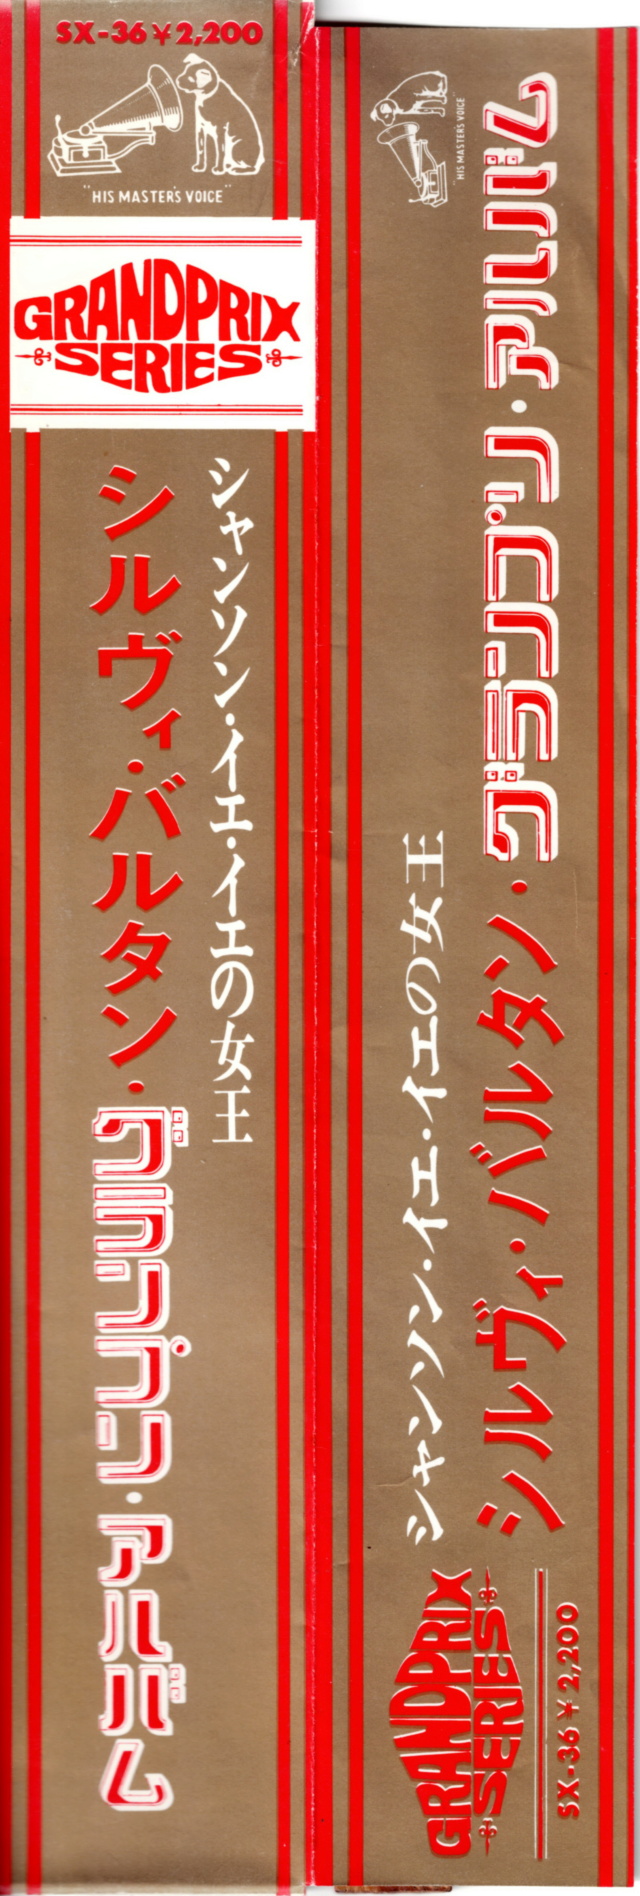 Discographie Japonaise - 4ème partie (33 T COMPILATION) - Page 3 Jpn_2986